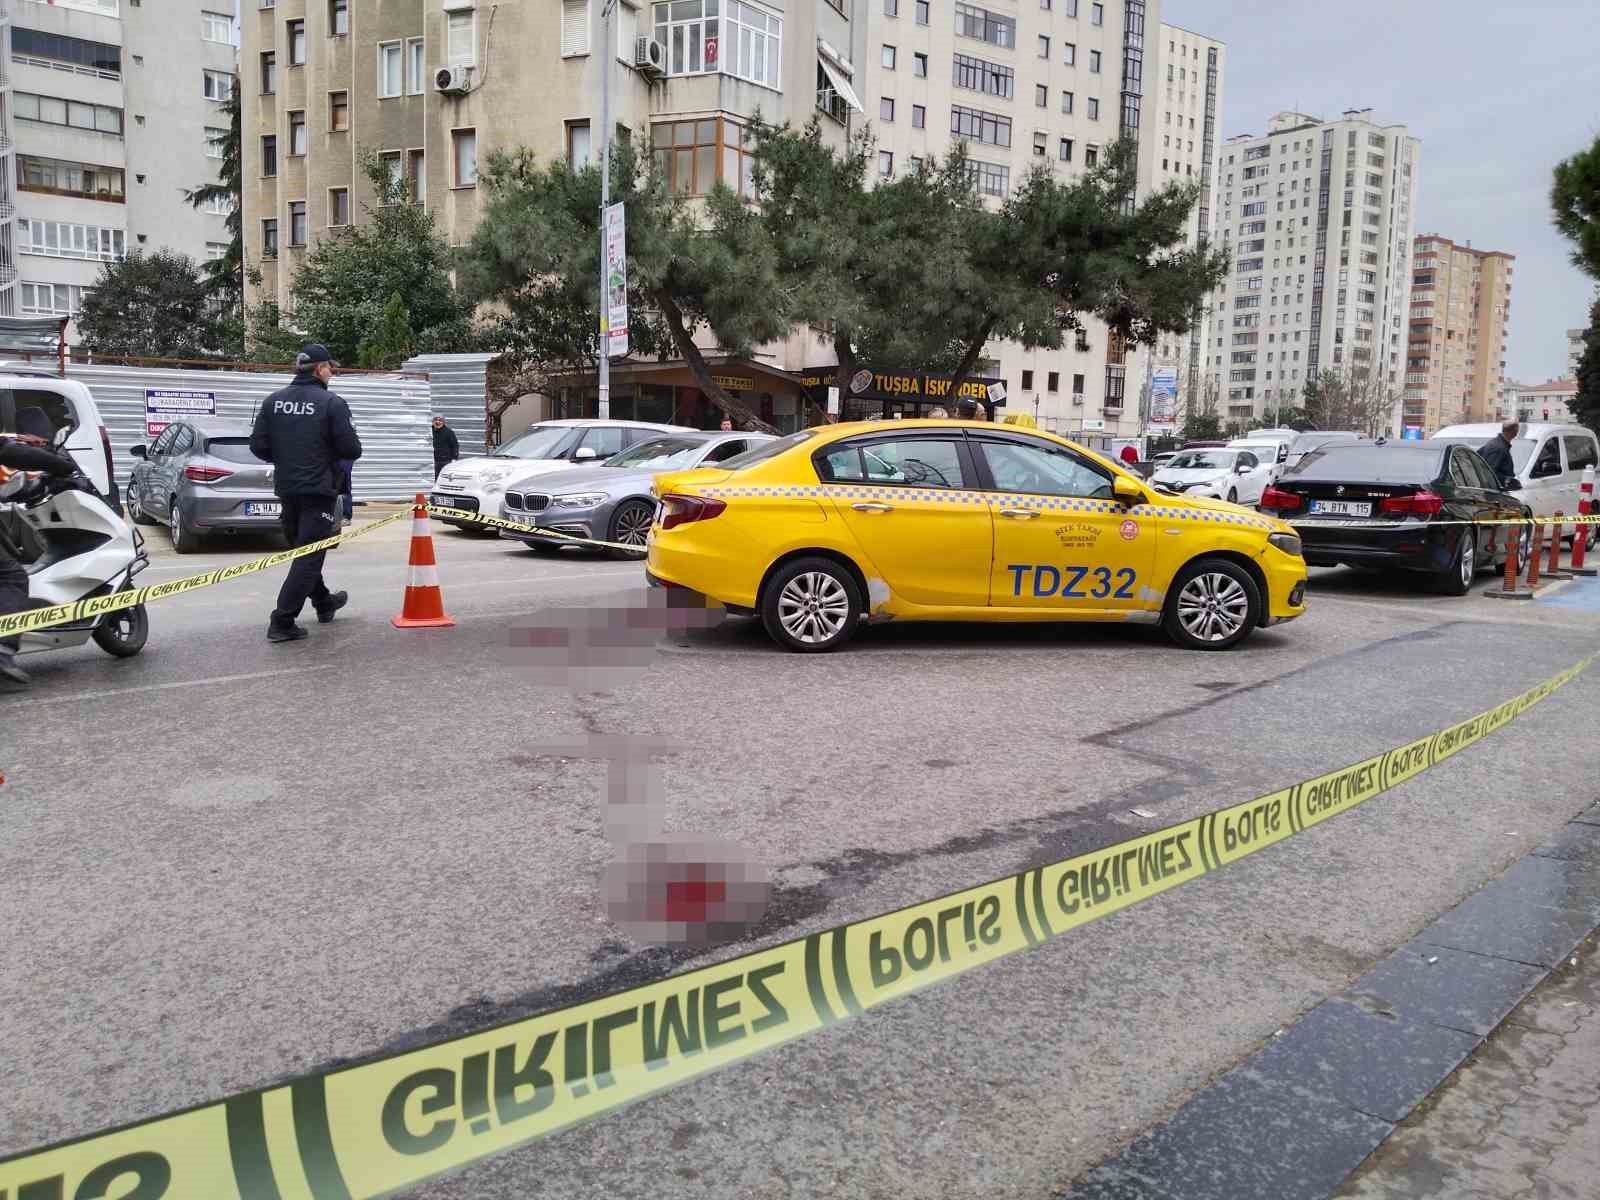 Kadıköy’de taksiciyi gasp edip bıçakladılar
